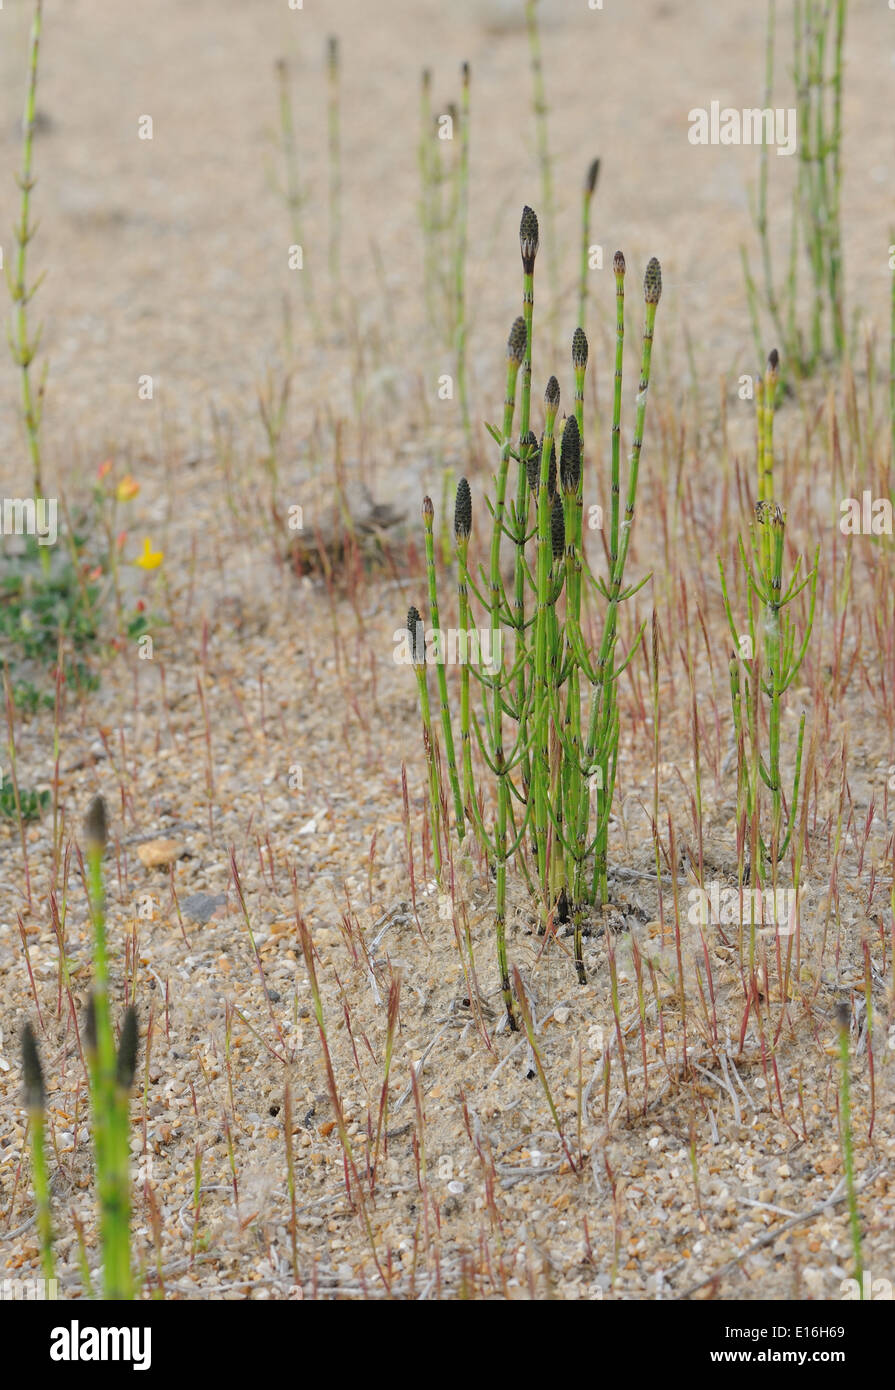 Kegelförmige, spore-Lager strobili an den Spitzen der Triebe der Ackerschachtelhalm, gemeinsame Schachtelhalm oder mare Schwanz (Equisetum arvense) wachsen im Sand Stockfoto